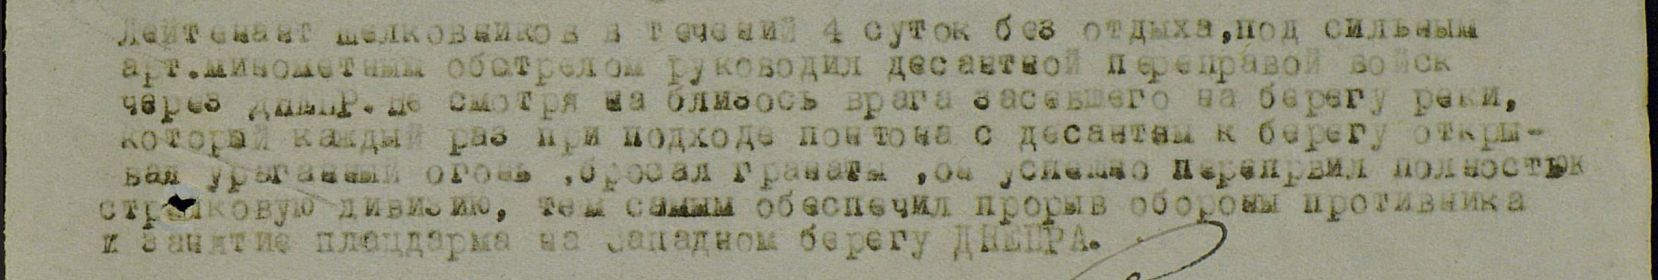 other-soldiers-files/uchetnaya_kartochka.1_jpg.jpg